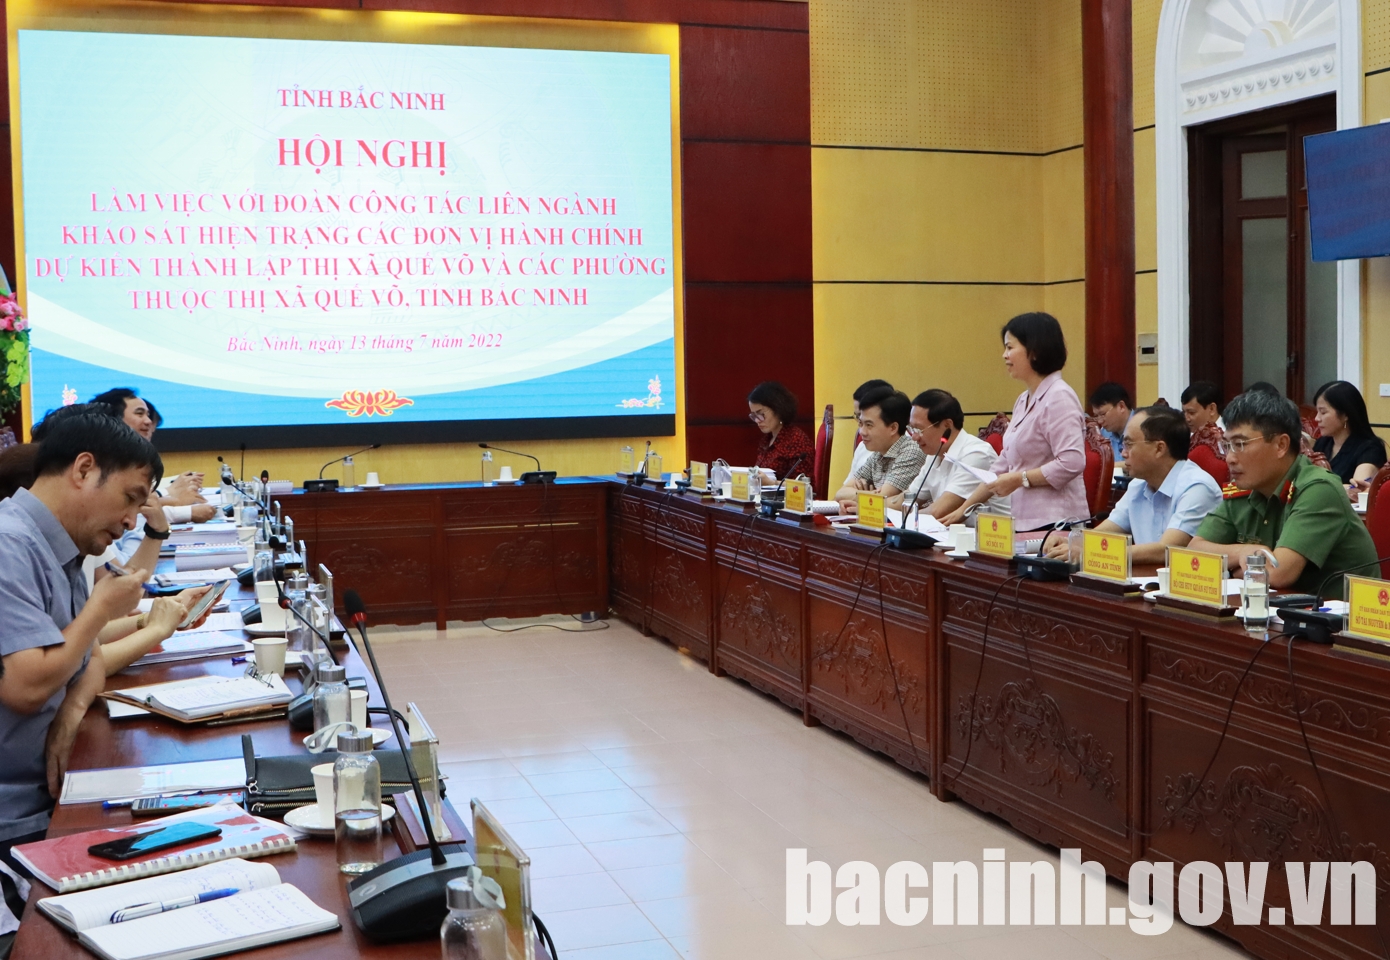 Đoàn công tác liên ngành Bộ Nội vụ khảo sát hiện trạng thành lập thị xã Quế Võ, tỉnh Bắc Ninh